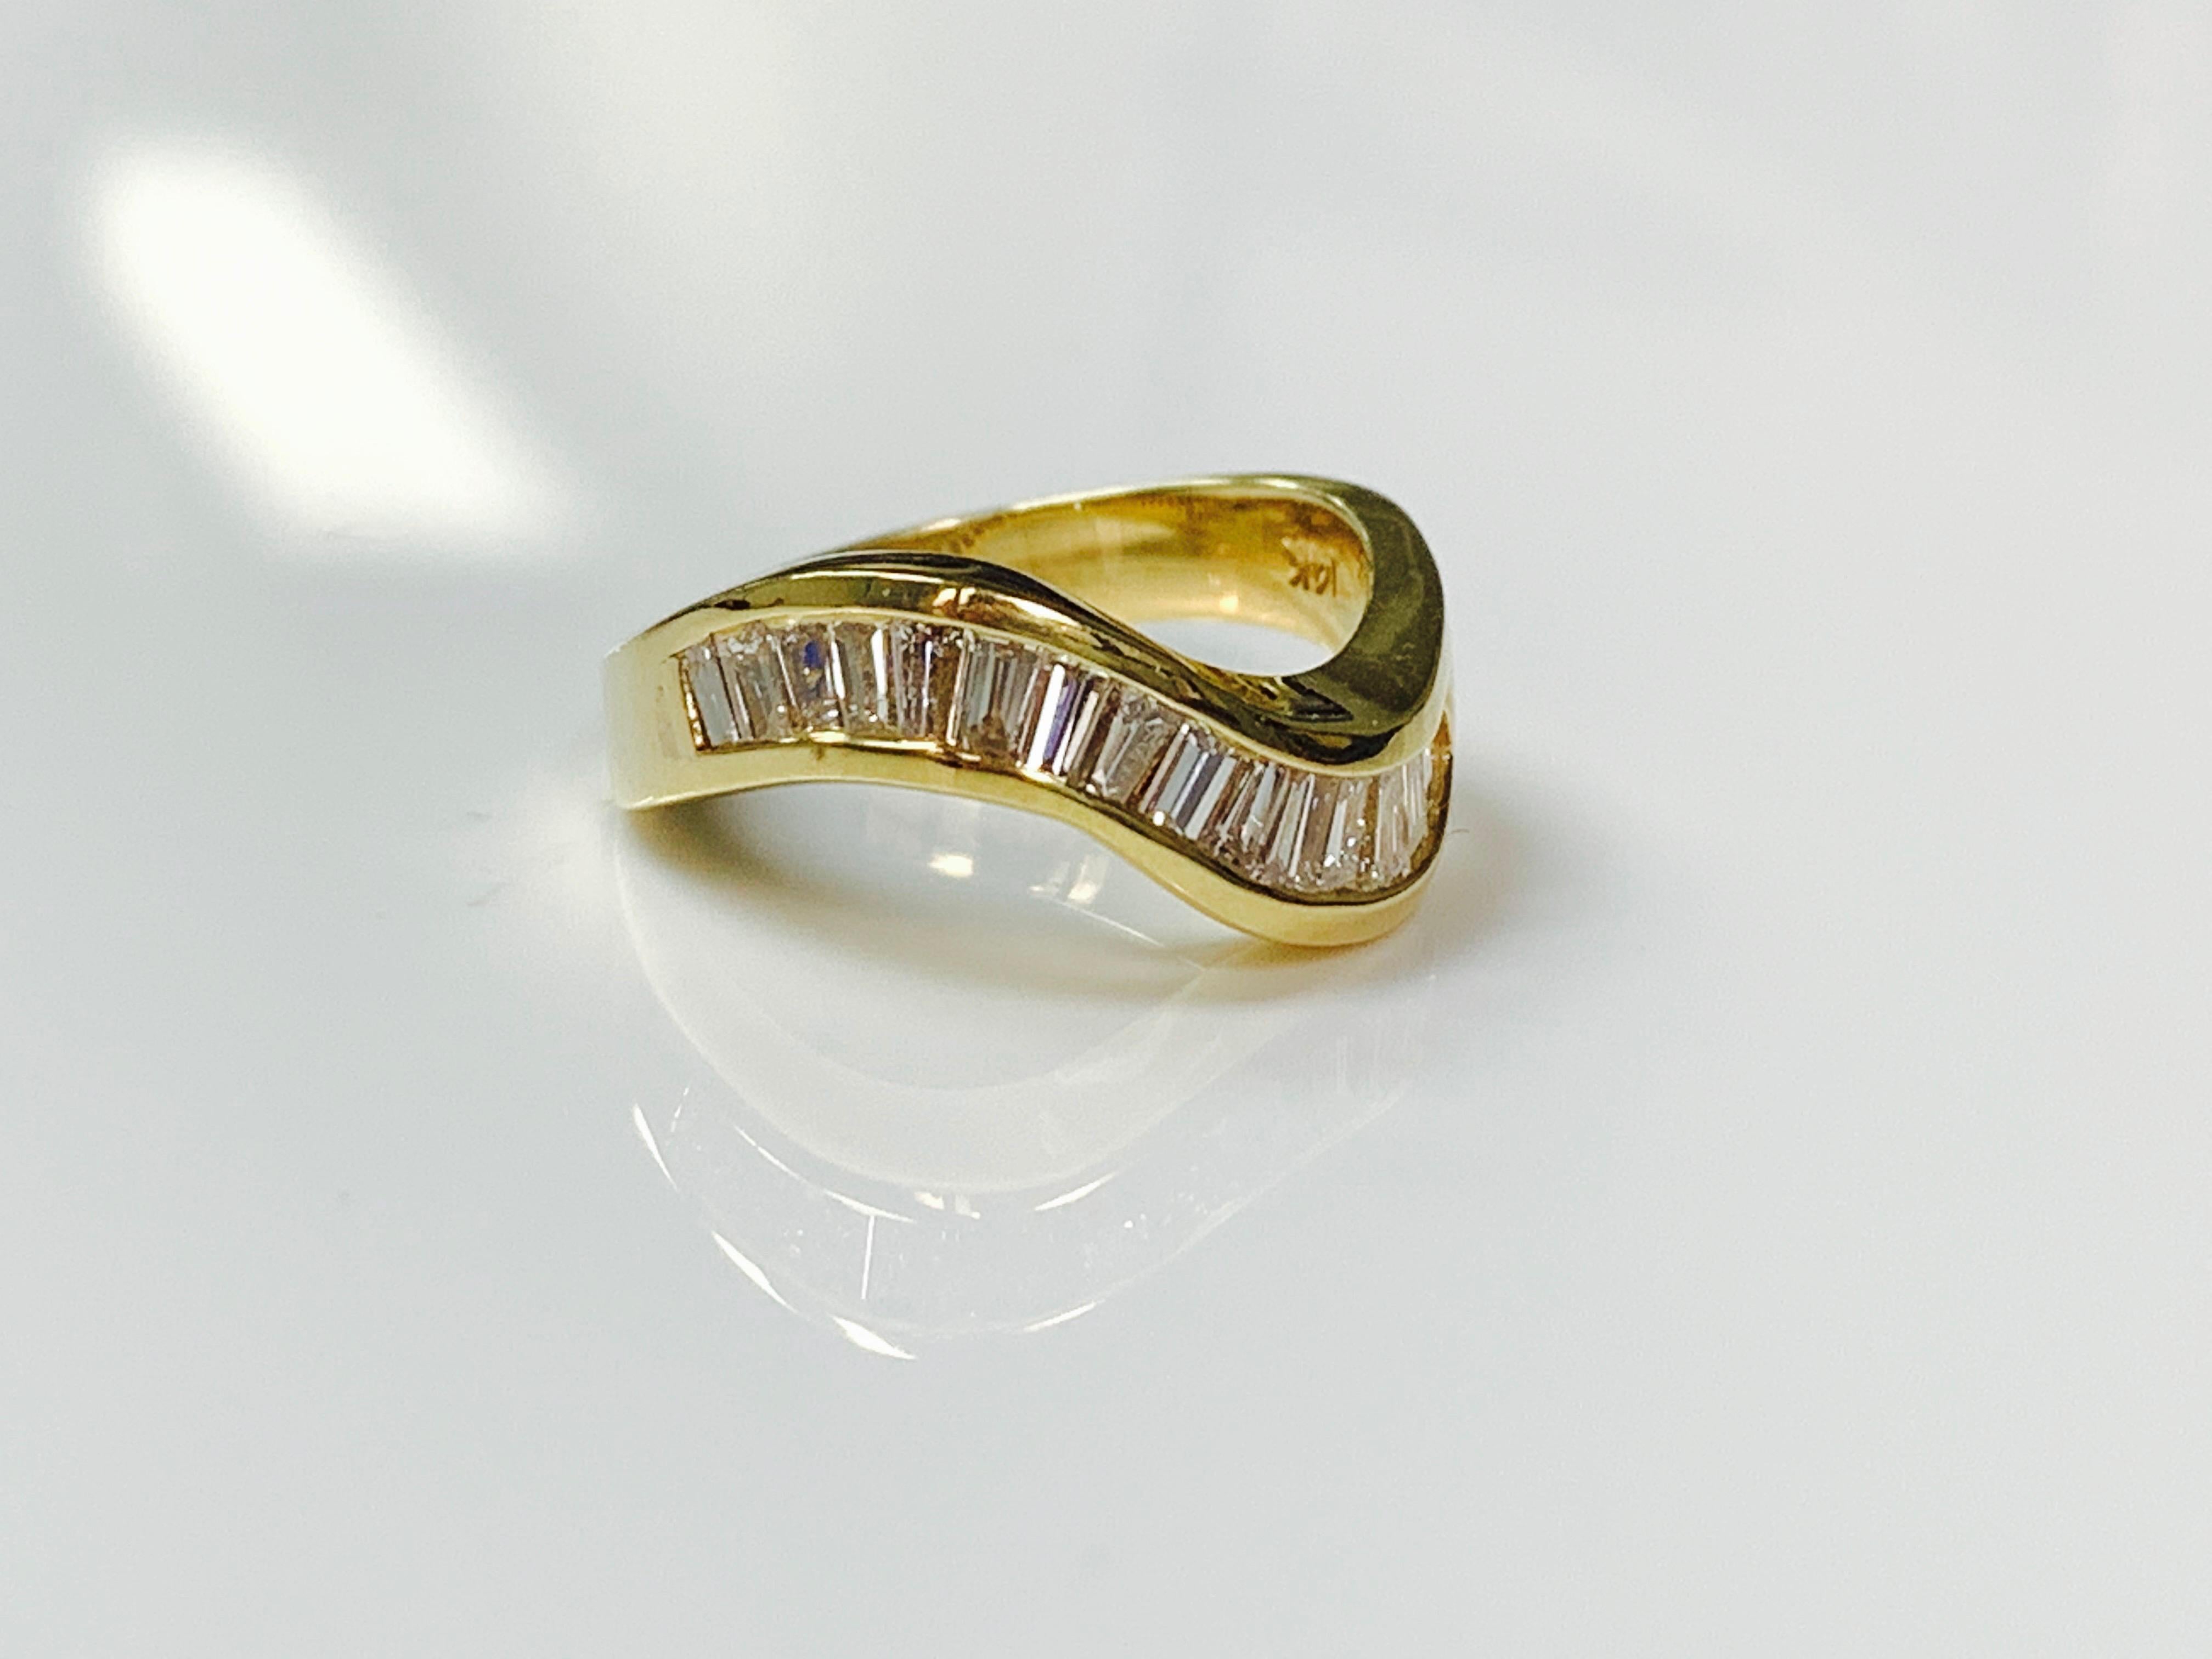 Diamond Baguette Ring handmade in 14 K Yellow Gold. 
Diamond Weight : 1.15 carat 
Metal : 14 k yellow gold 
Ring Size : 6 